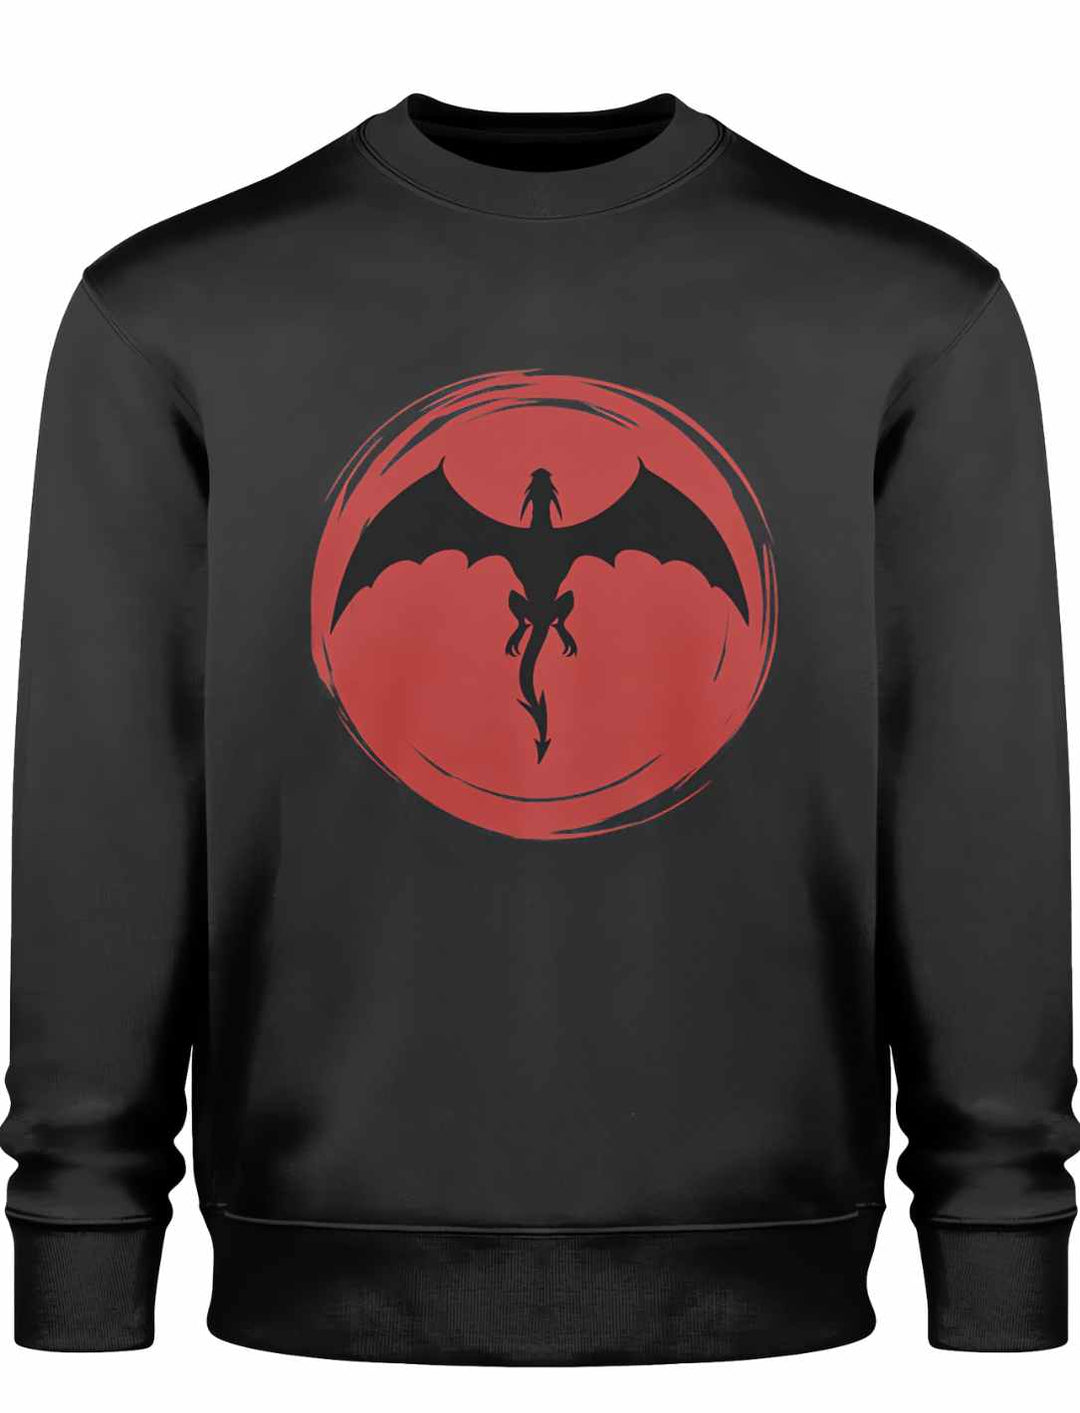 Schwarzes 'Saga of the Dragon' Sweatshirt flach ausgelegt, das beeindruckende Drachenmotiv zentral platziert, bereit, die Legende zu entfachen.